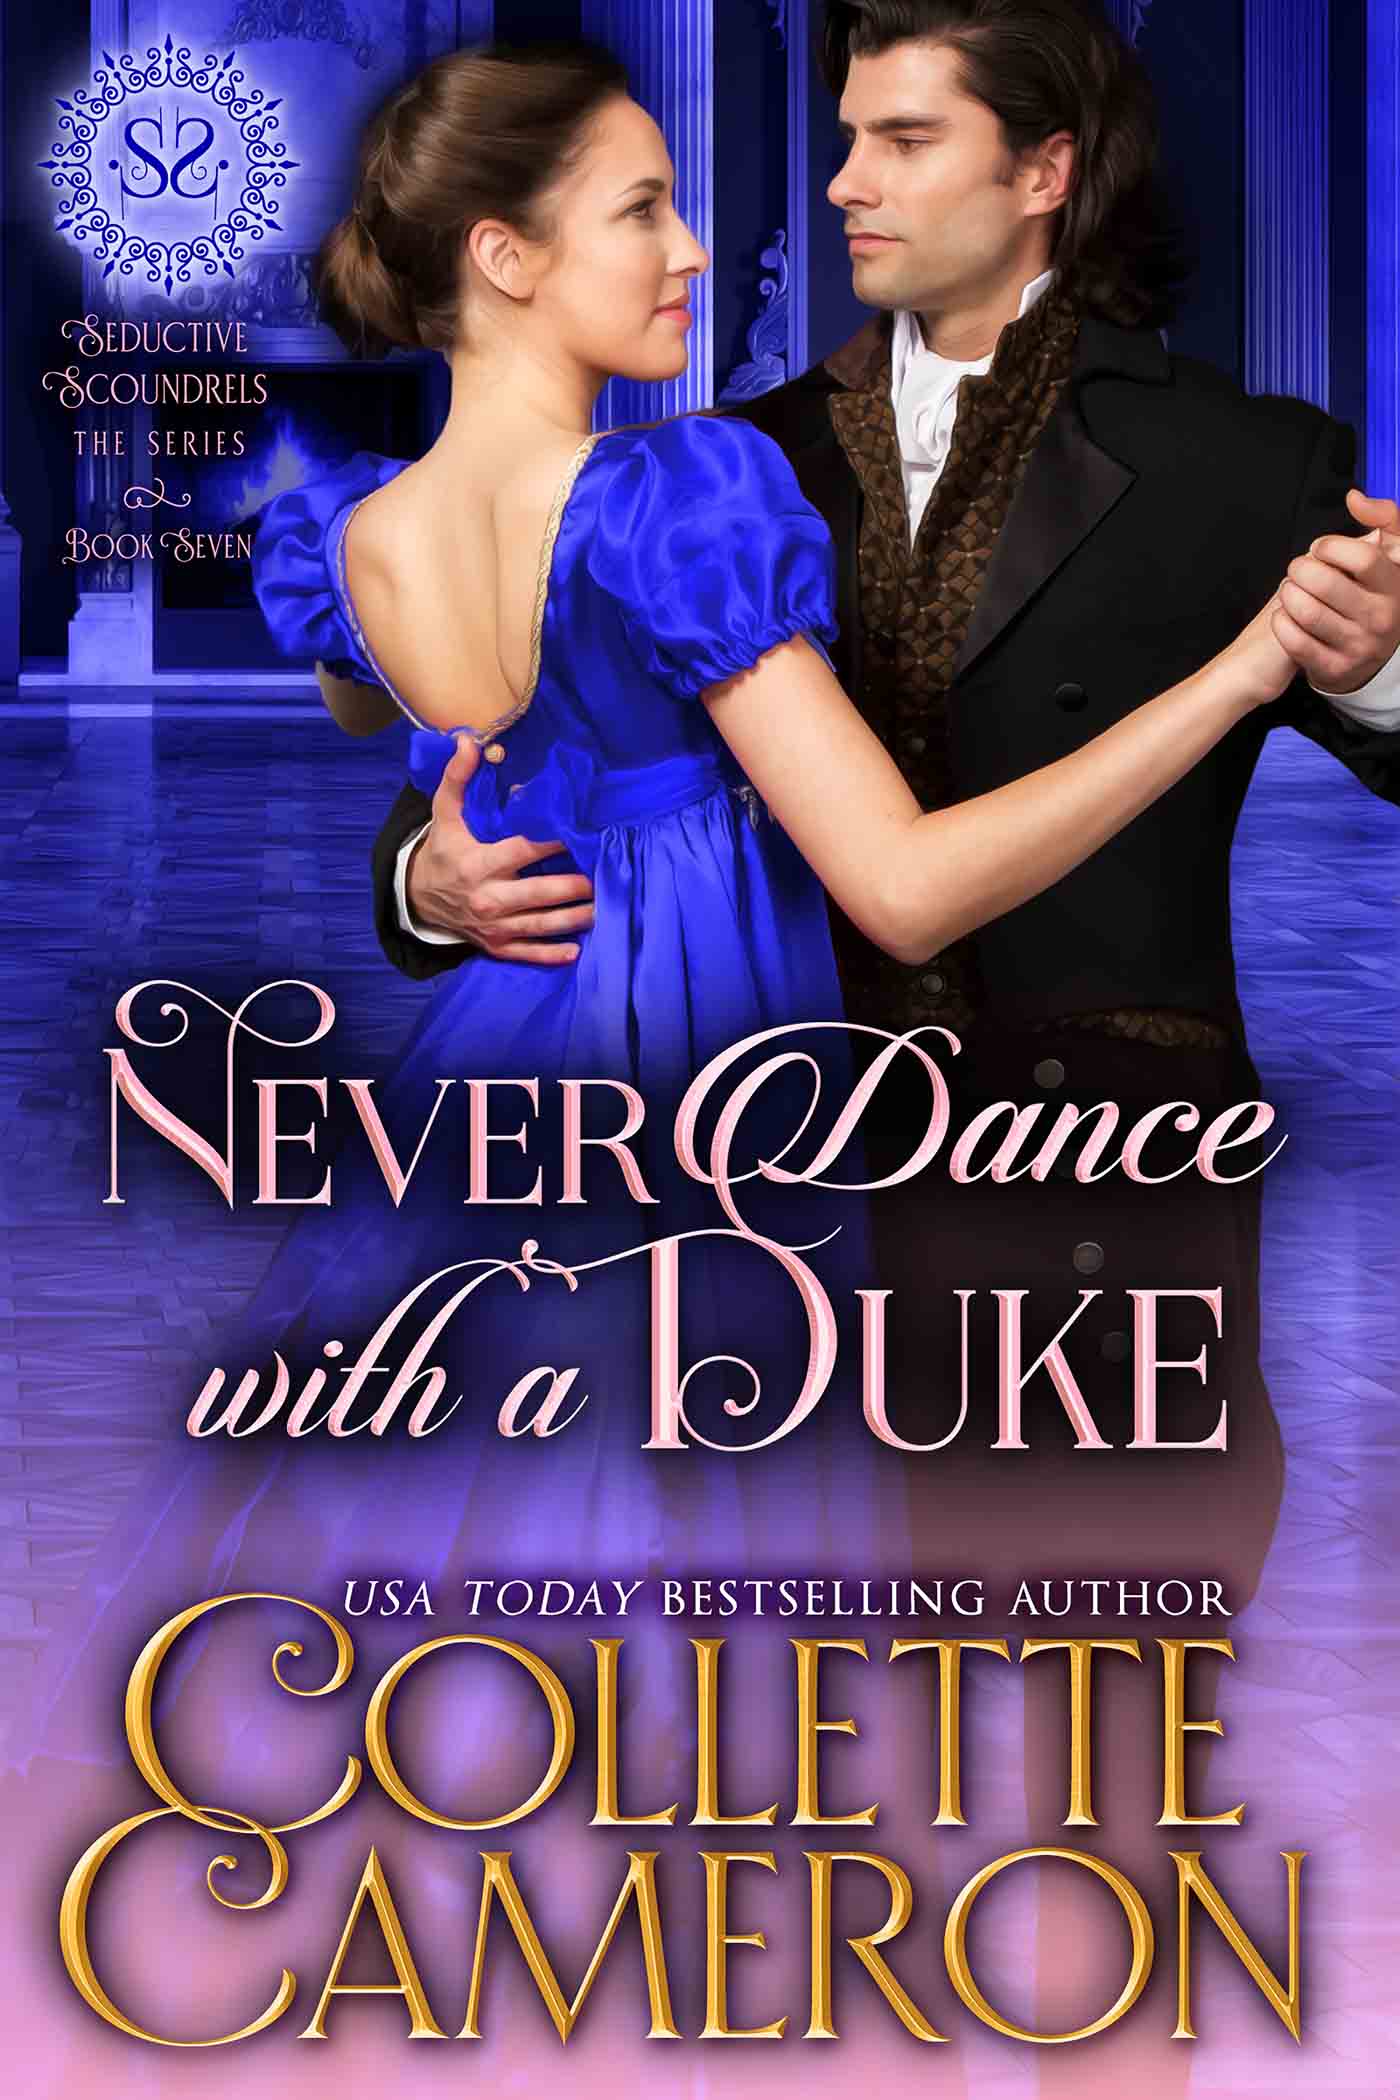 Collette's Historical Romances 31